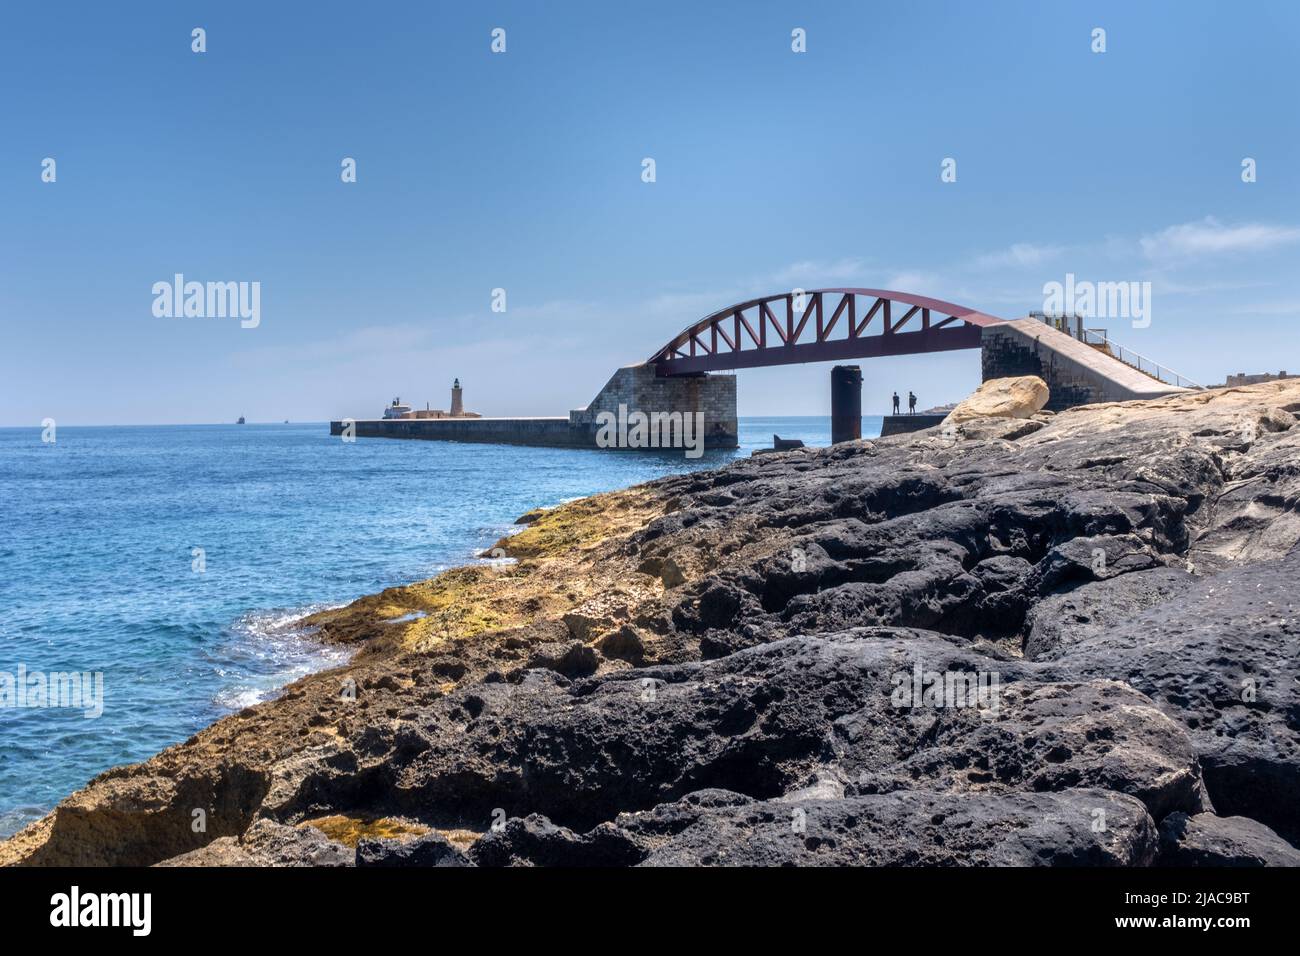 St Elmo Bridge, Valletta, Malta Stock Photo